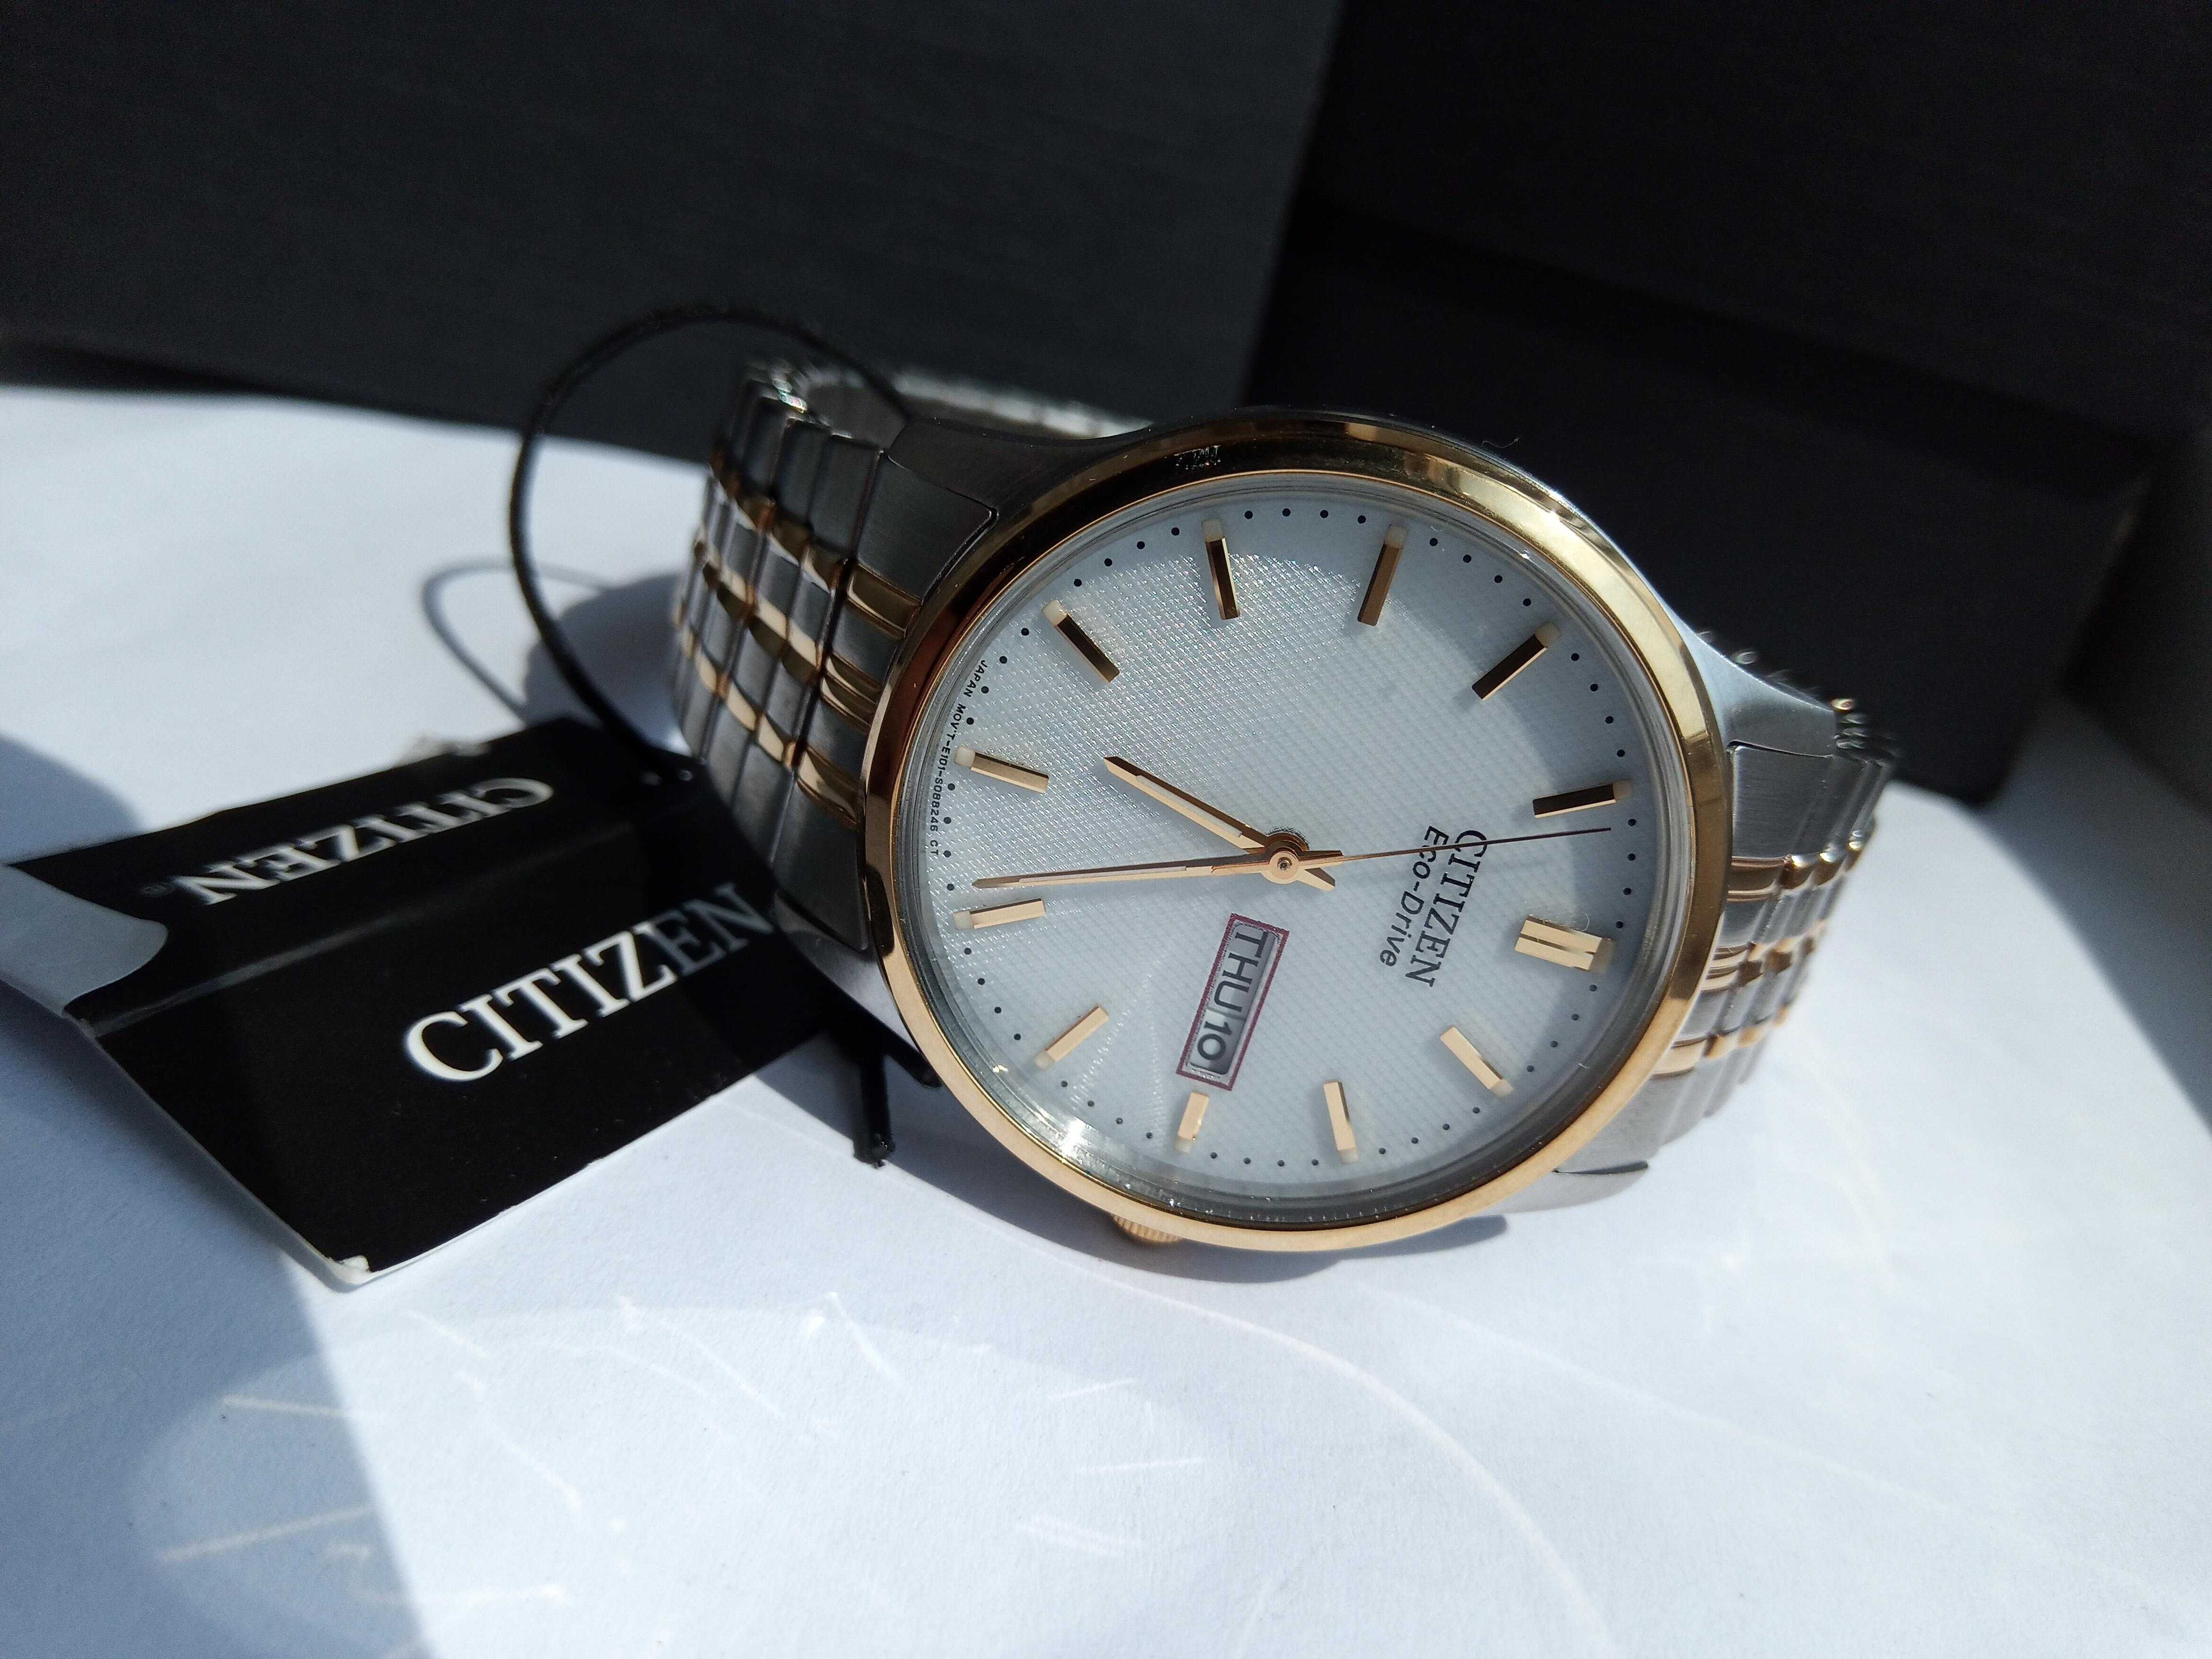 Японские мужские часы Citizen Eco-Drive, солнечная батарея, РРЦ $225